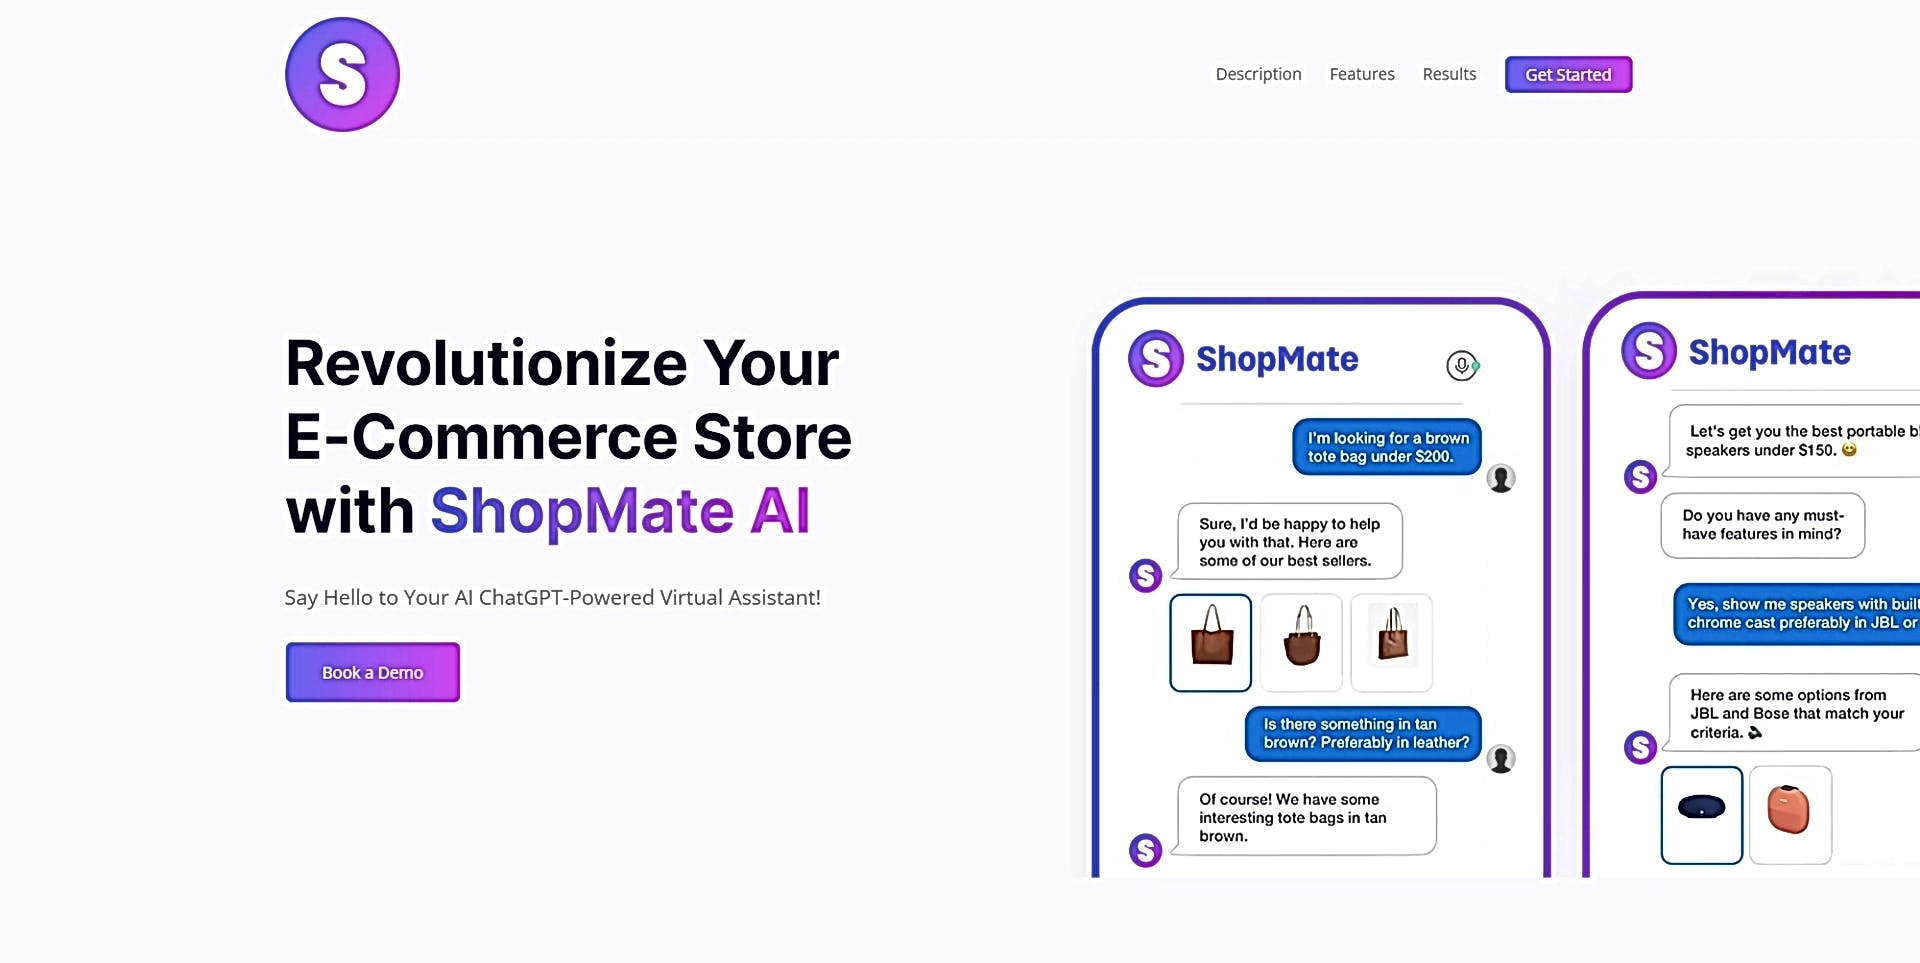 ShopMate featured